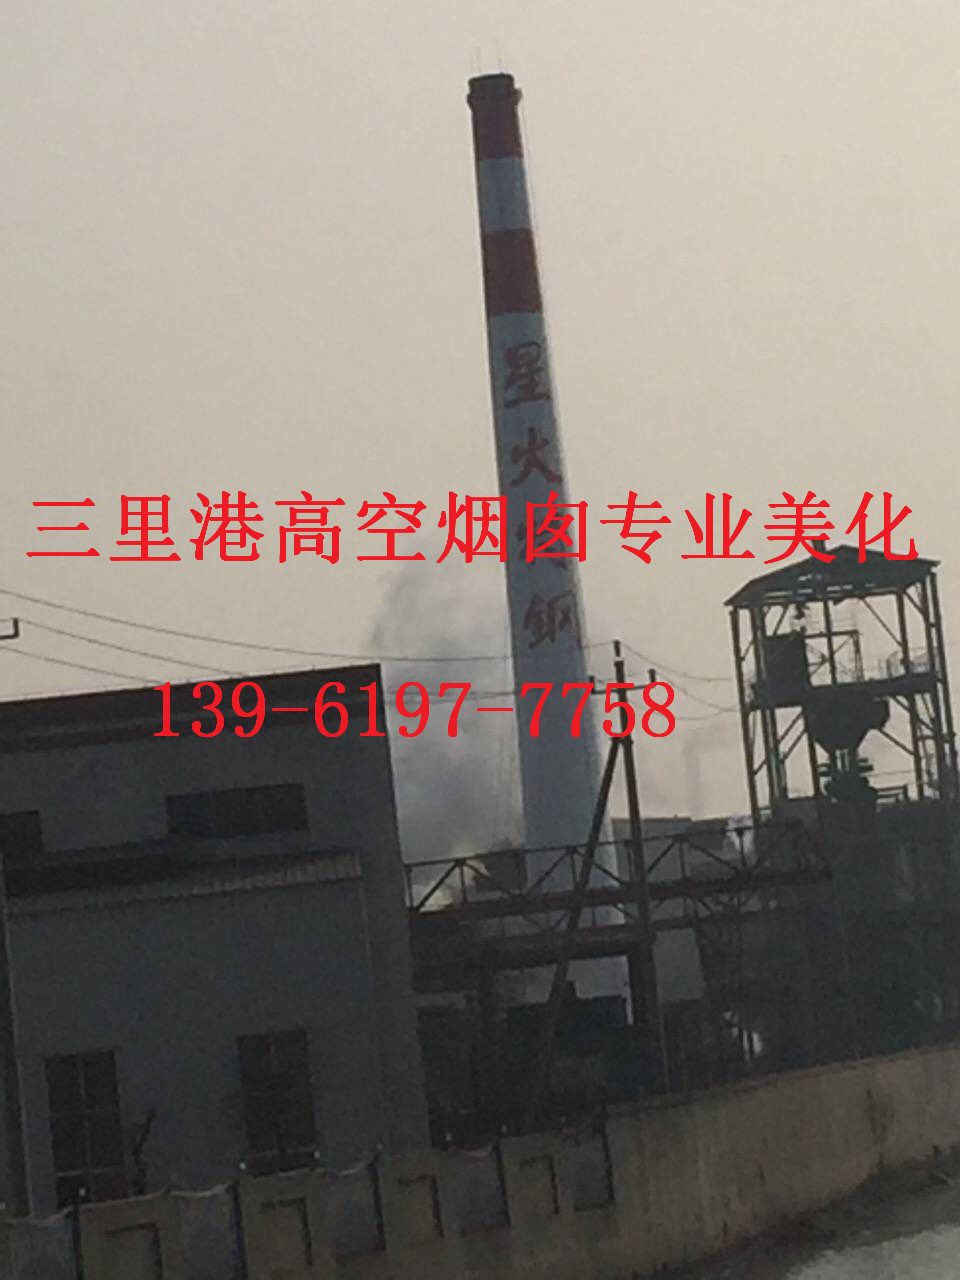 北京市烟囱刷航标施工工程高效益